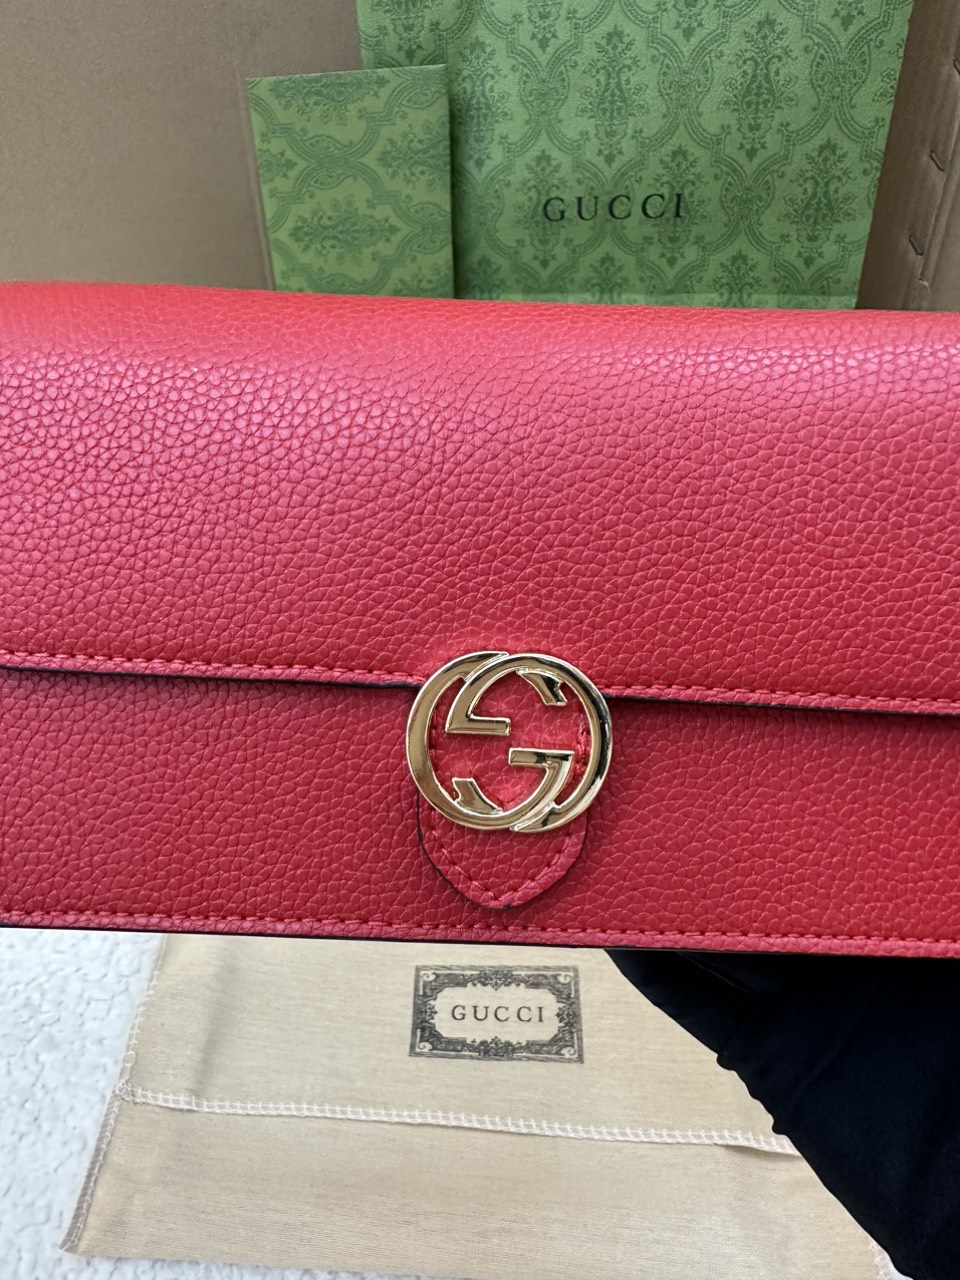 Túi/Ví Gucci Long Wallet Interlocking Super G GG Logo Màu Đỏ Size 20cm 615524